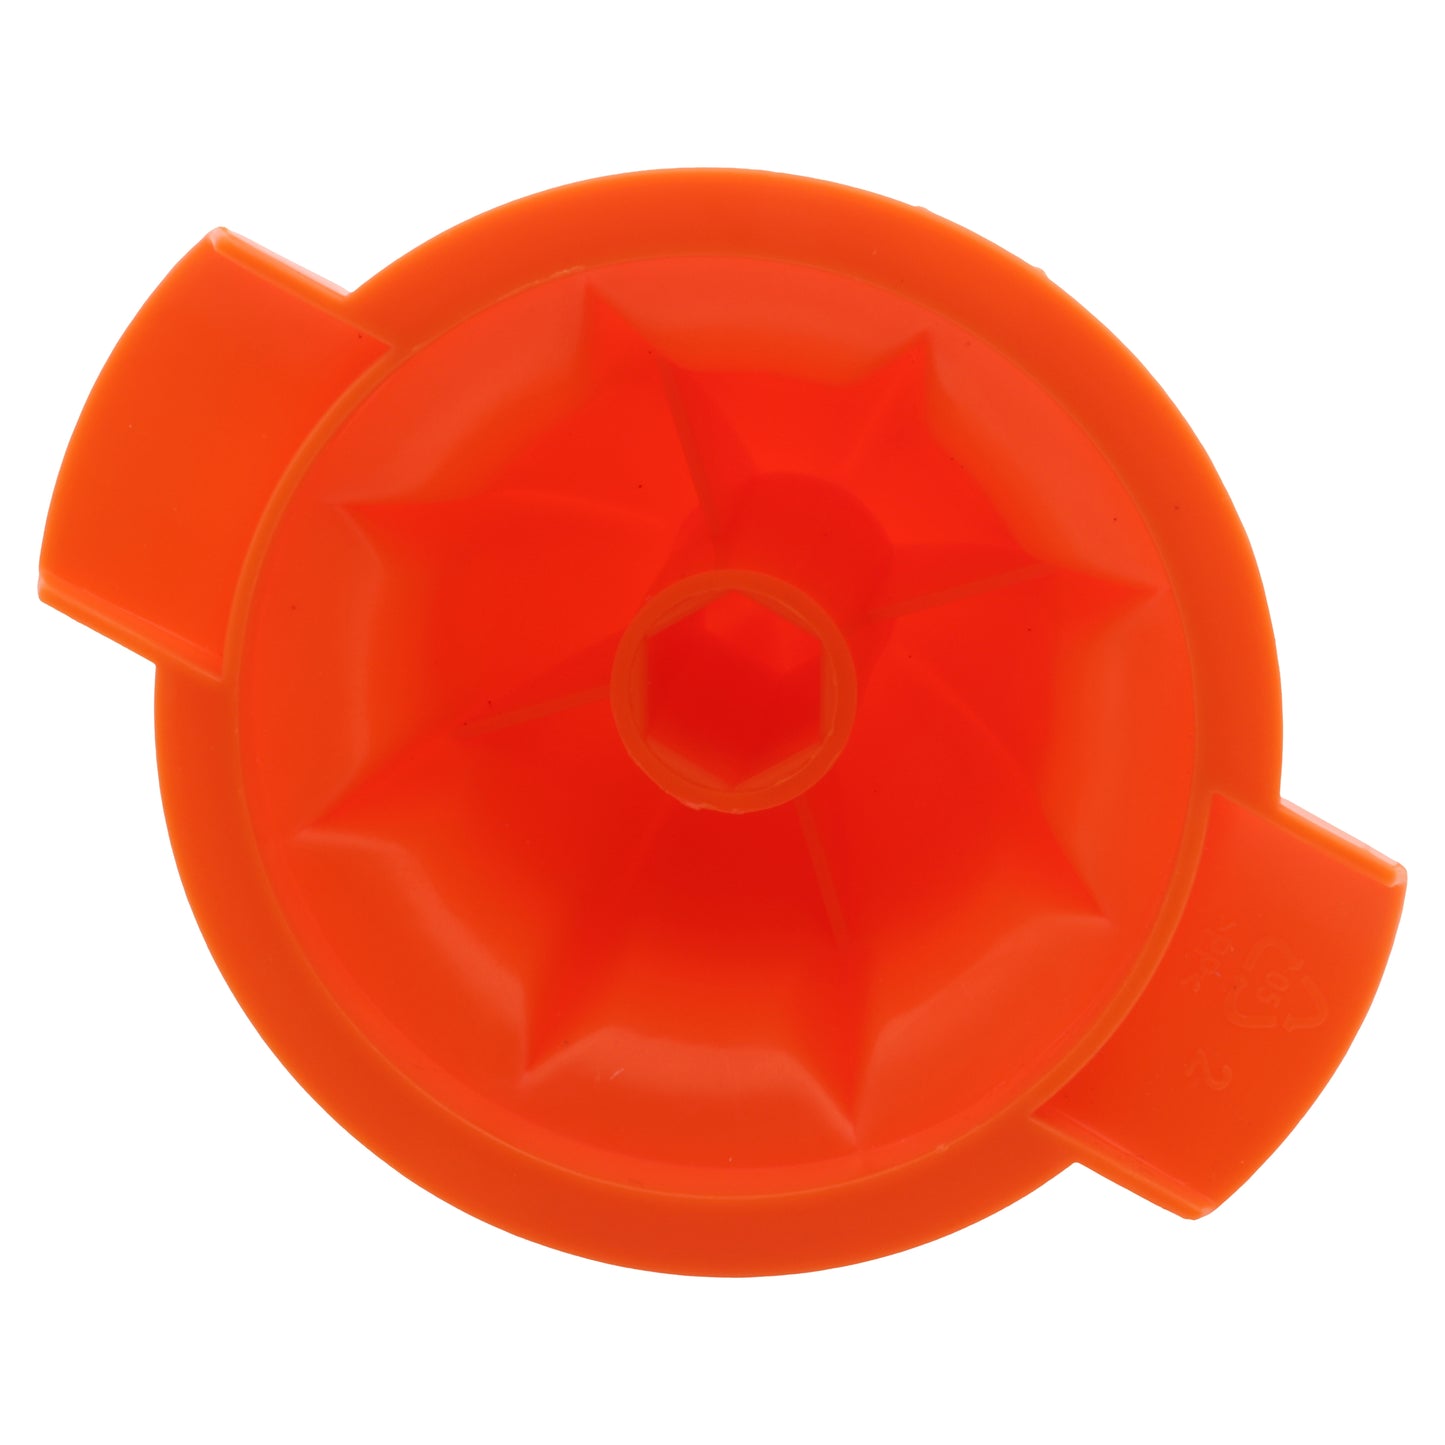 Taurus cono ogiva piccolo arancione spremiagrumi Citrus Glass OL-362 30W 924254